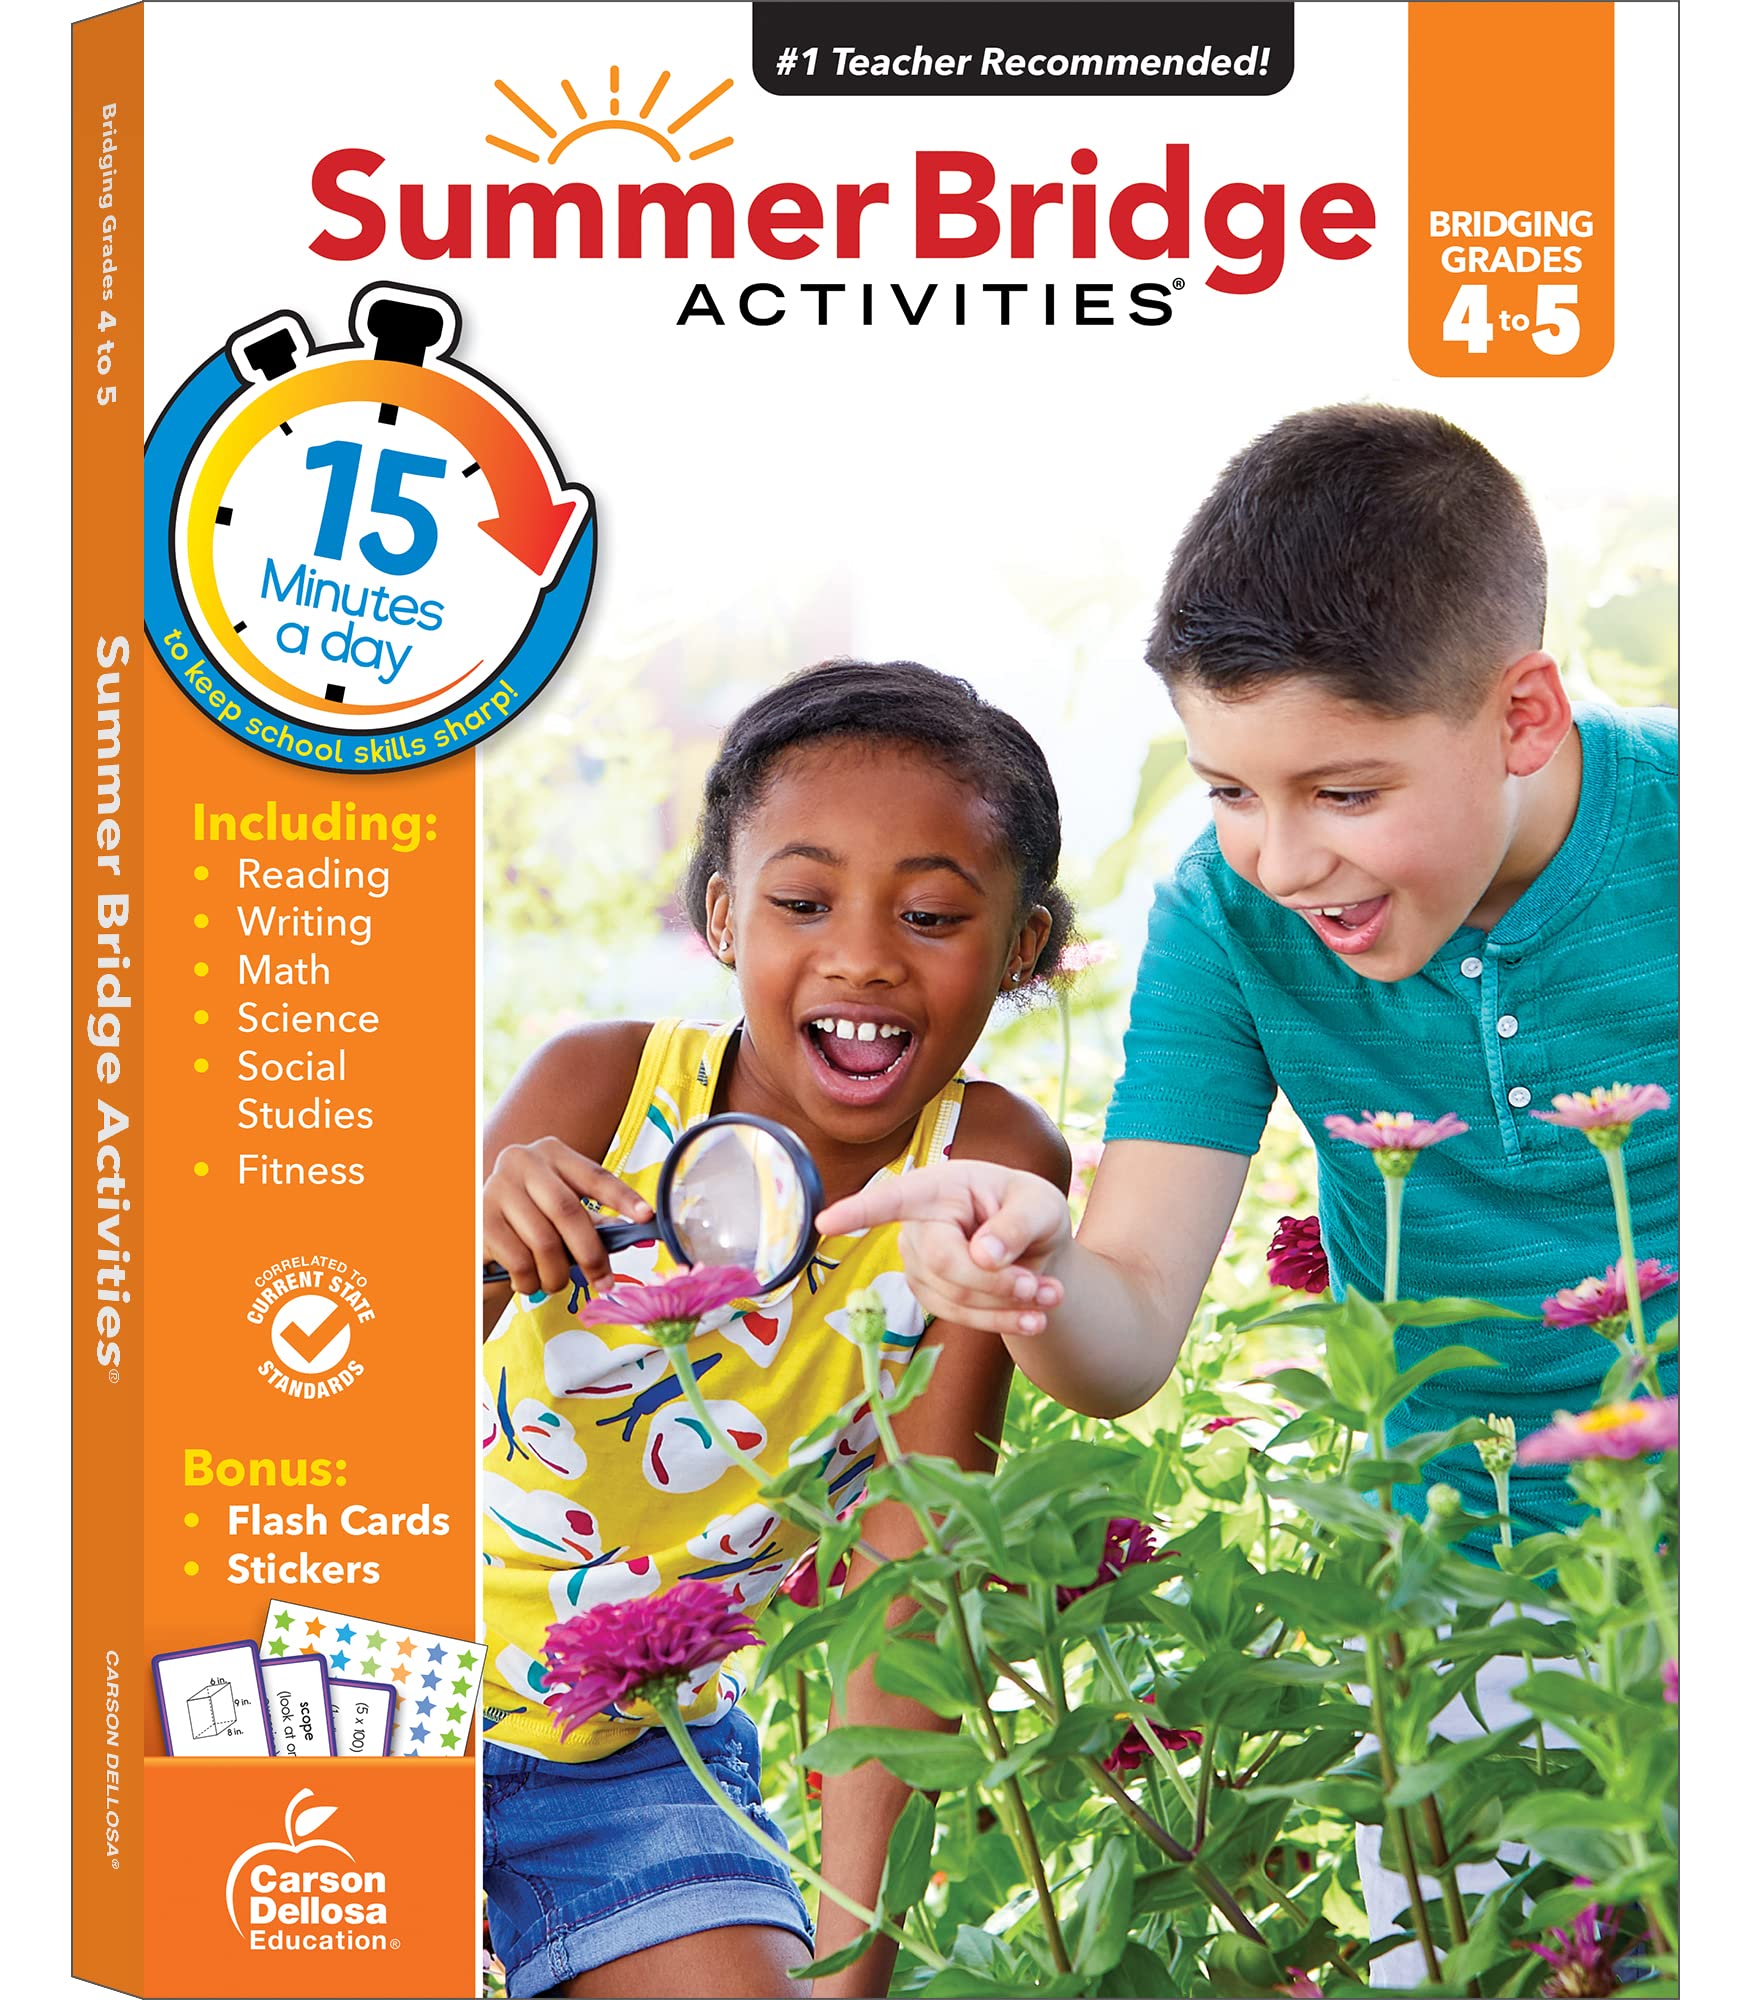 Summer Bridge Activities, Grades 4 - 5: Volume 6 by Summer Bridge Activities